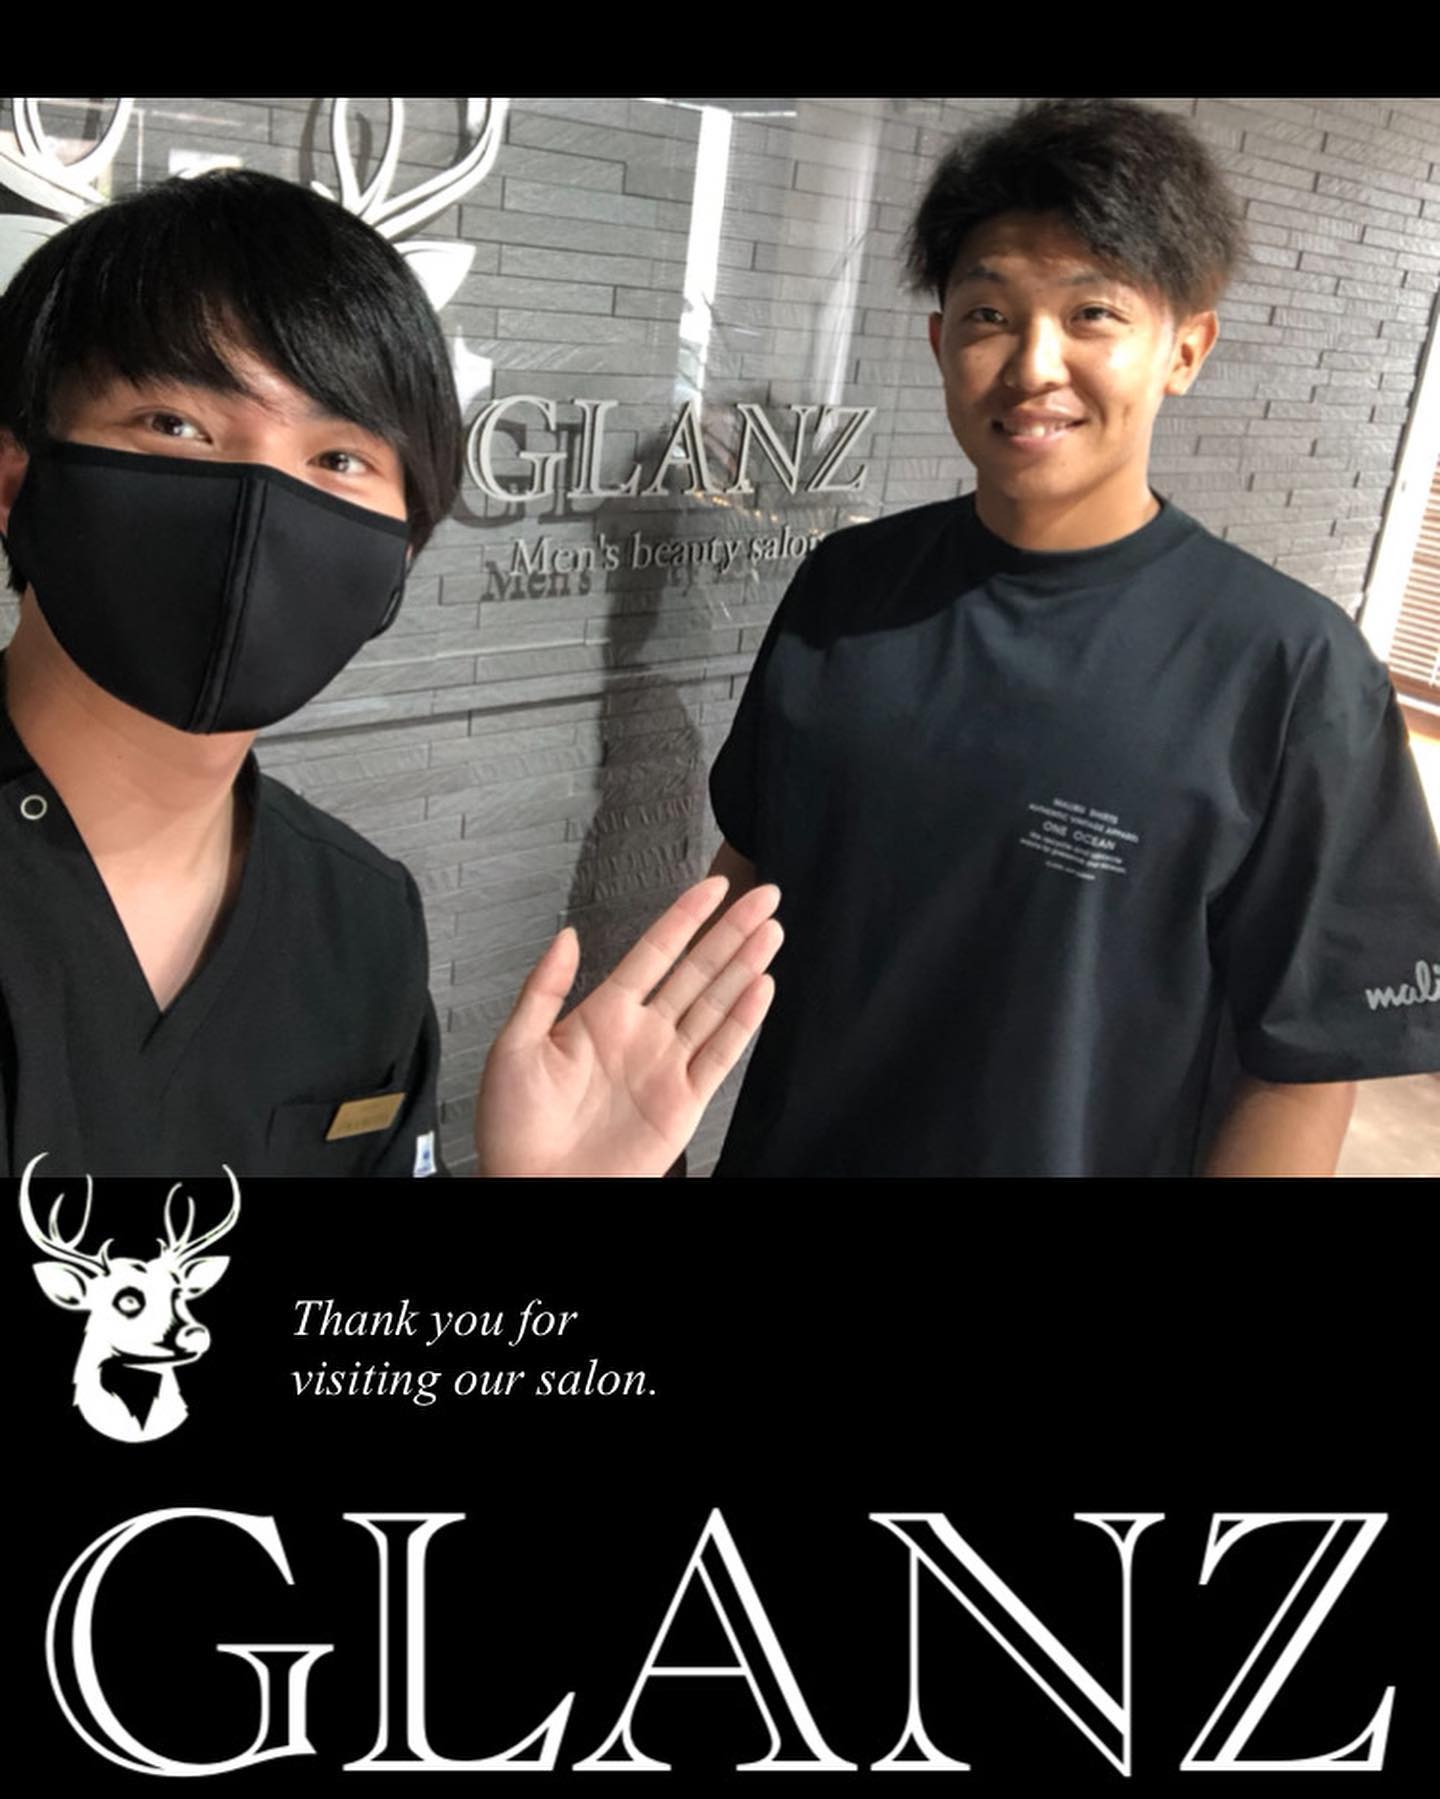 .【ご来店のお客様】.#阪神タイガース で活躍されている#島田海吏 選手がご来店くださいました@tigers.5326 ..お写真ありがとうございますサインもいただいていますので、ご来店の際はご覧になってくださいね🖋..理想のお肌を目指し、GLANZと一緒に頑張っていきましょう！今後とも宜しくお願いいたします️.また次回のご来店をお待ちしております♪..️GLANZ -グランズ-️https://glanzashiya.com/.≪無料カウンセリングのご予約受付中≫／／ HotpepperまたはHPから！ ＼＼.[ADDRESS]〒659-0065 兵庫県芦屋市公光町7-12メインステージ芦屋公光3階.︎阪神本線　阪神芦屋駅徒歩1分︎近隣にコインパーキング多数有り︎芦屋警察署の裏.[TEL]080-6521-5785.[MAIL]glanz.ashiya@icloud.com.[営業時間]11:00〜21:00(最終受付20:00).[定休日]不定休.———————————————————…#ひげ脱毛 #メンズ脱毛 #髭脱毛 #ヒゲ脱毛 #男性脱毛 #男性美容 #芦屋脱毛サロン #光脱毛 #ワックス脱毛 #芦屋 #メンズ脱毛サロン #芦屋エステ #全身脱毛 #神戸脱毛 #神戸メンズ脱毛 #メンズ脱毛サロン #西宮メンズ脱毛 #vio脱毛 #芦屋市 #西宮メンズサロン #芦屋脱毛 #脱毛キャンペーン #西宮脱毛  #脱毛 #脱毛器 #脱毛サロン #芦屋メンズ脱毛 #阪神タイガース #tigers ＃島田海吏選手 .